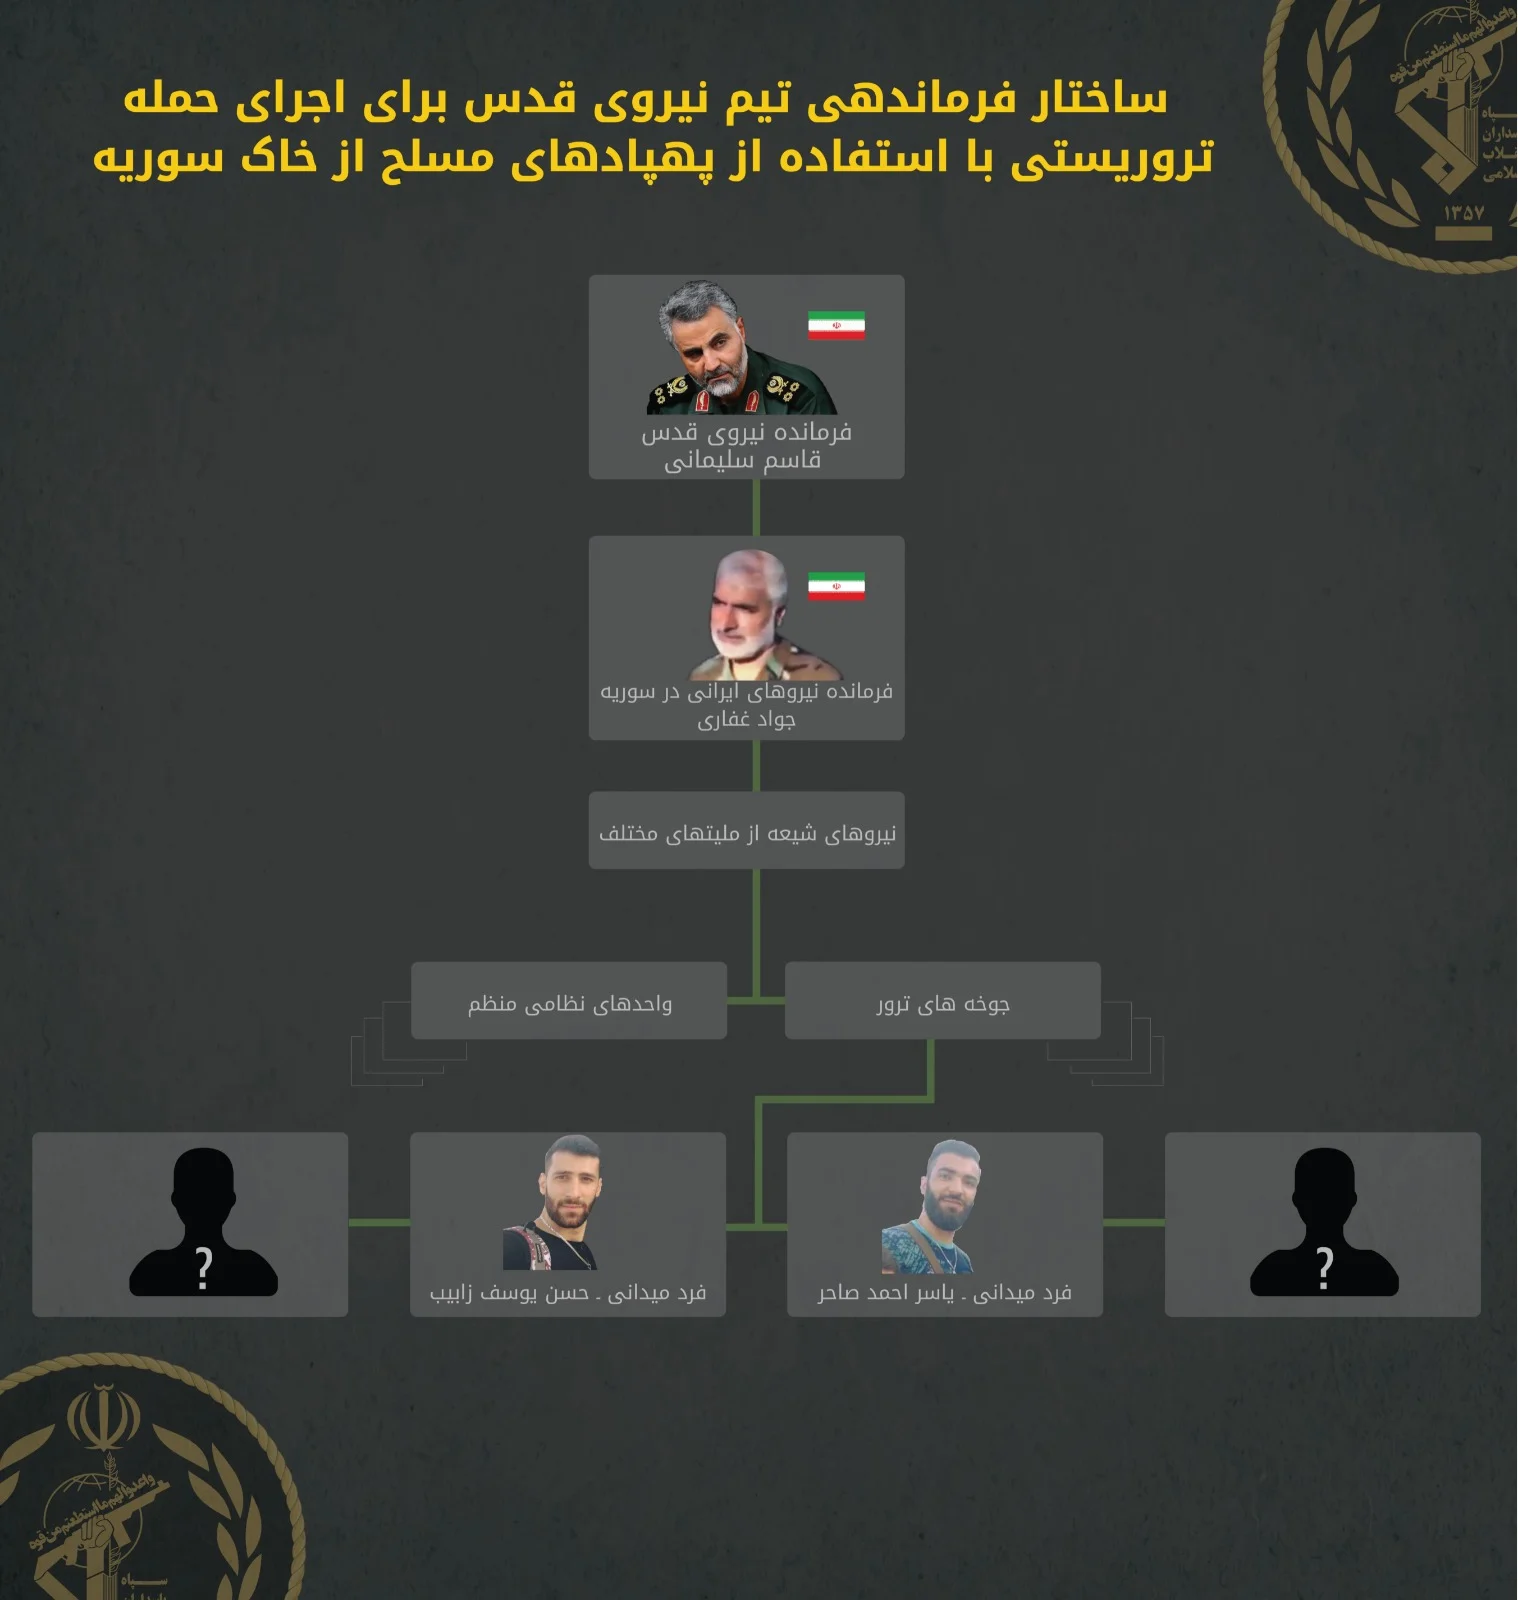 מבנה הפיקוד על חוללית כוח קדס לביצוע פיגוע רחפנים מסוריה בפרסית